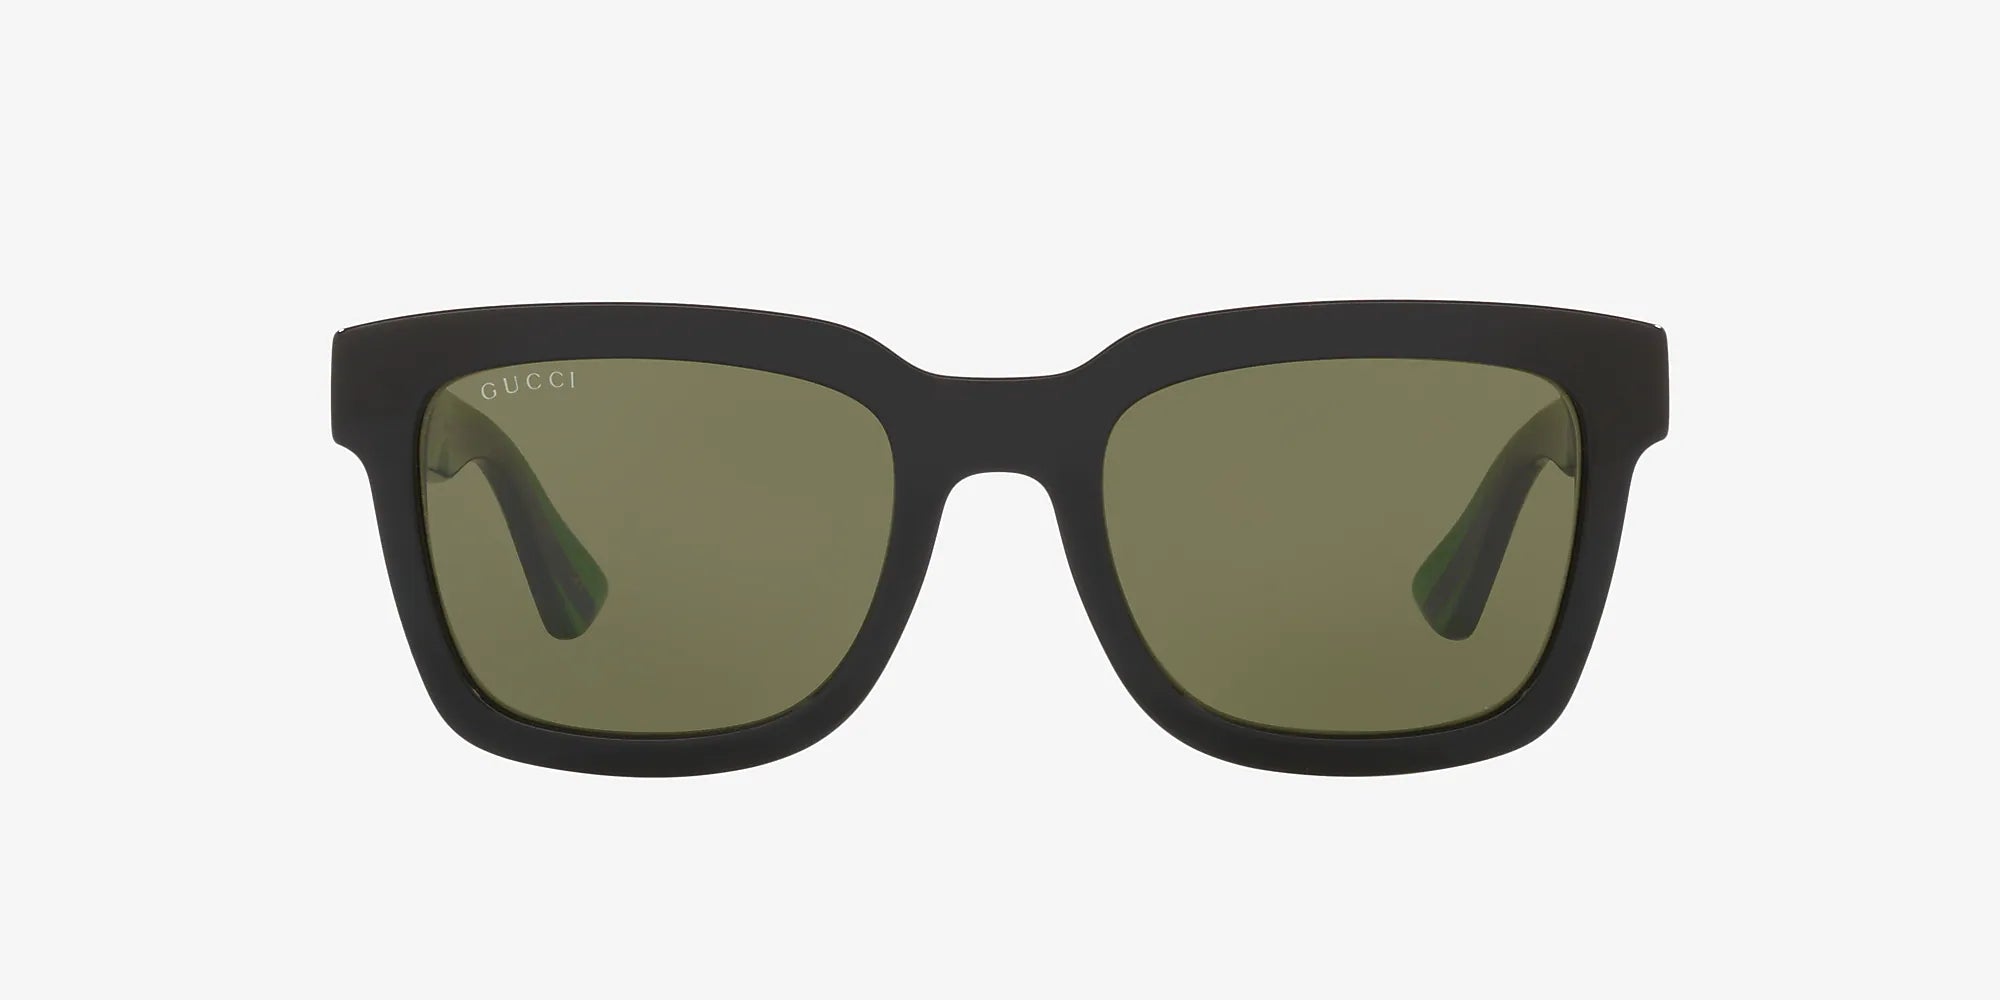 Men's Black/Green Striped Gucci Sunglasses 52mm